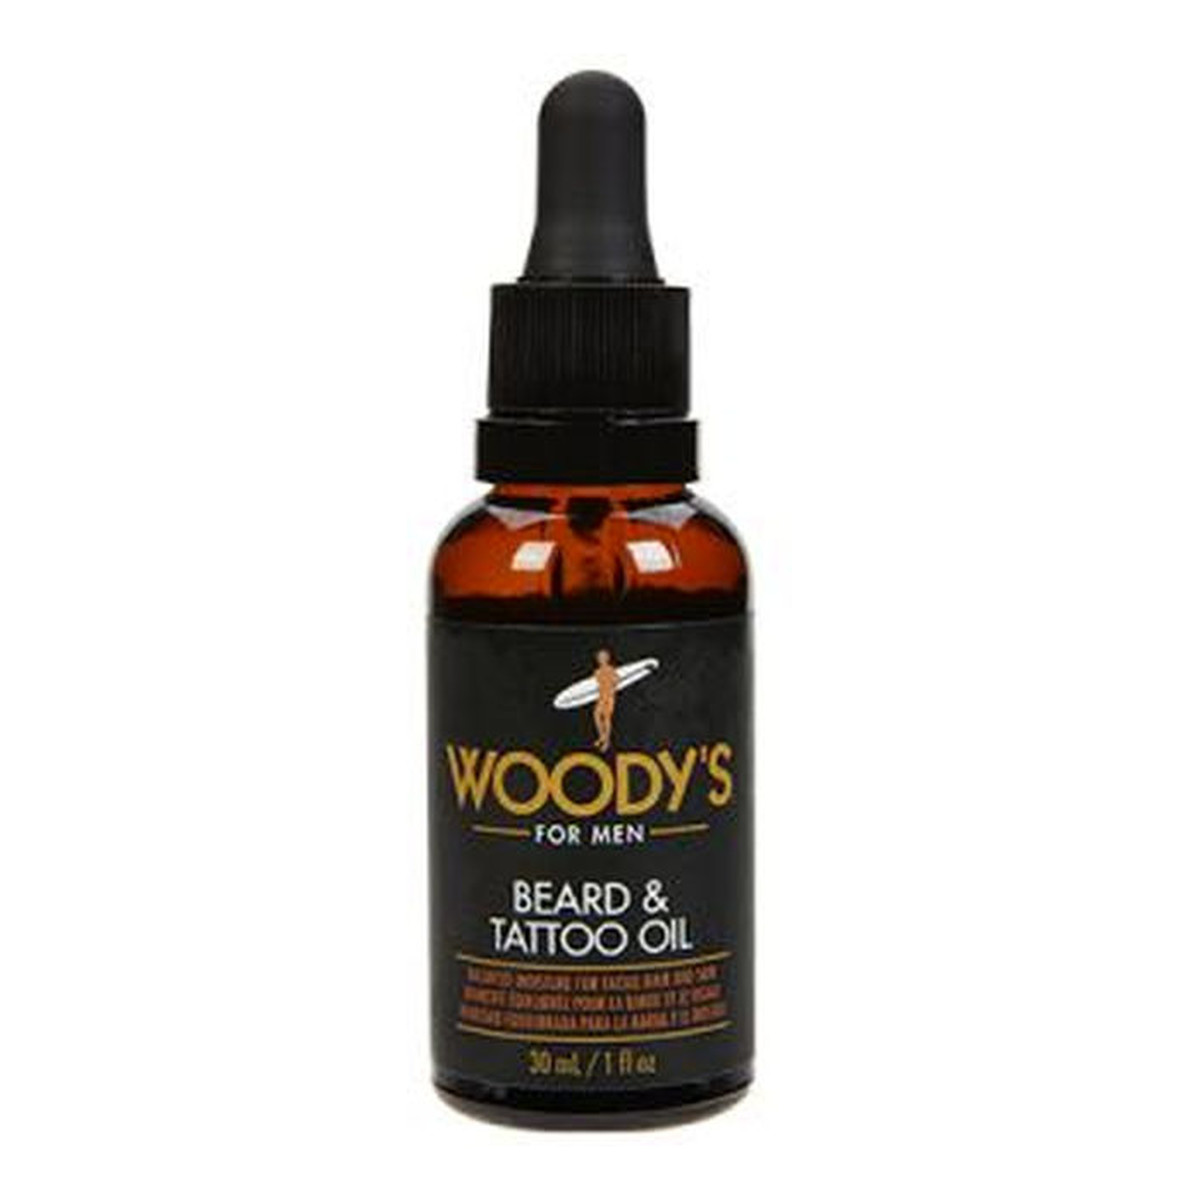 Woody’s Beard & Tattoo Oil nawilżający Olejek do brody i tatuaży 30ml